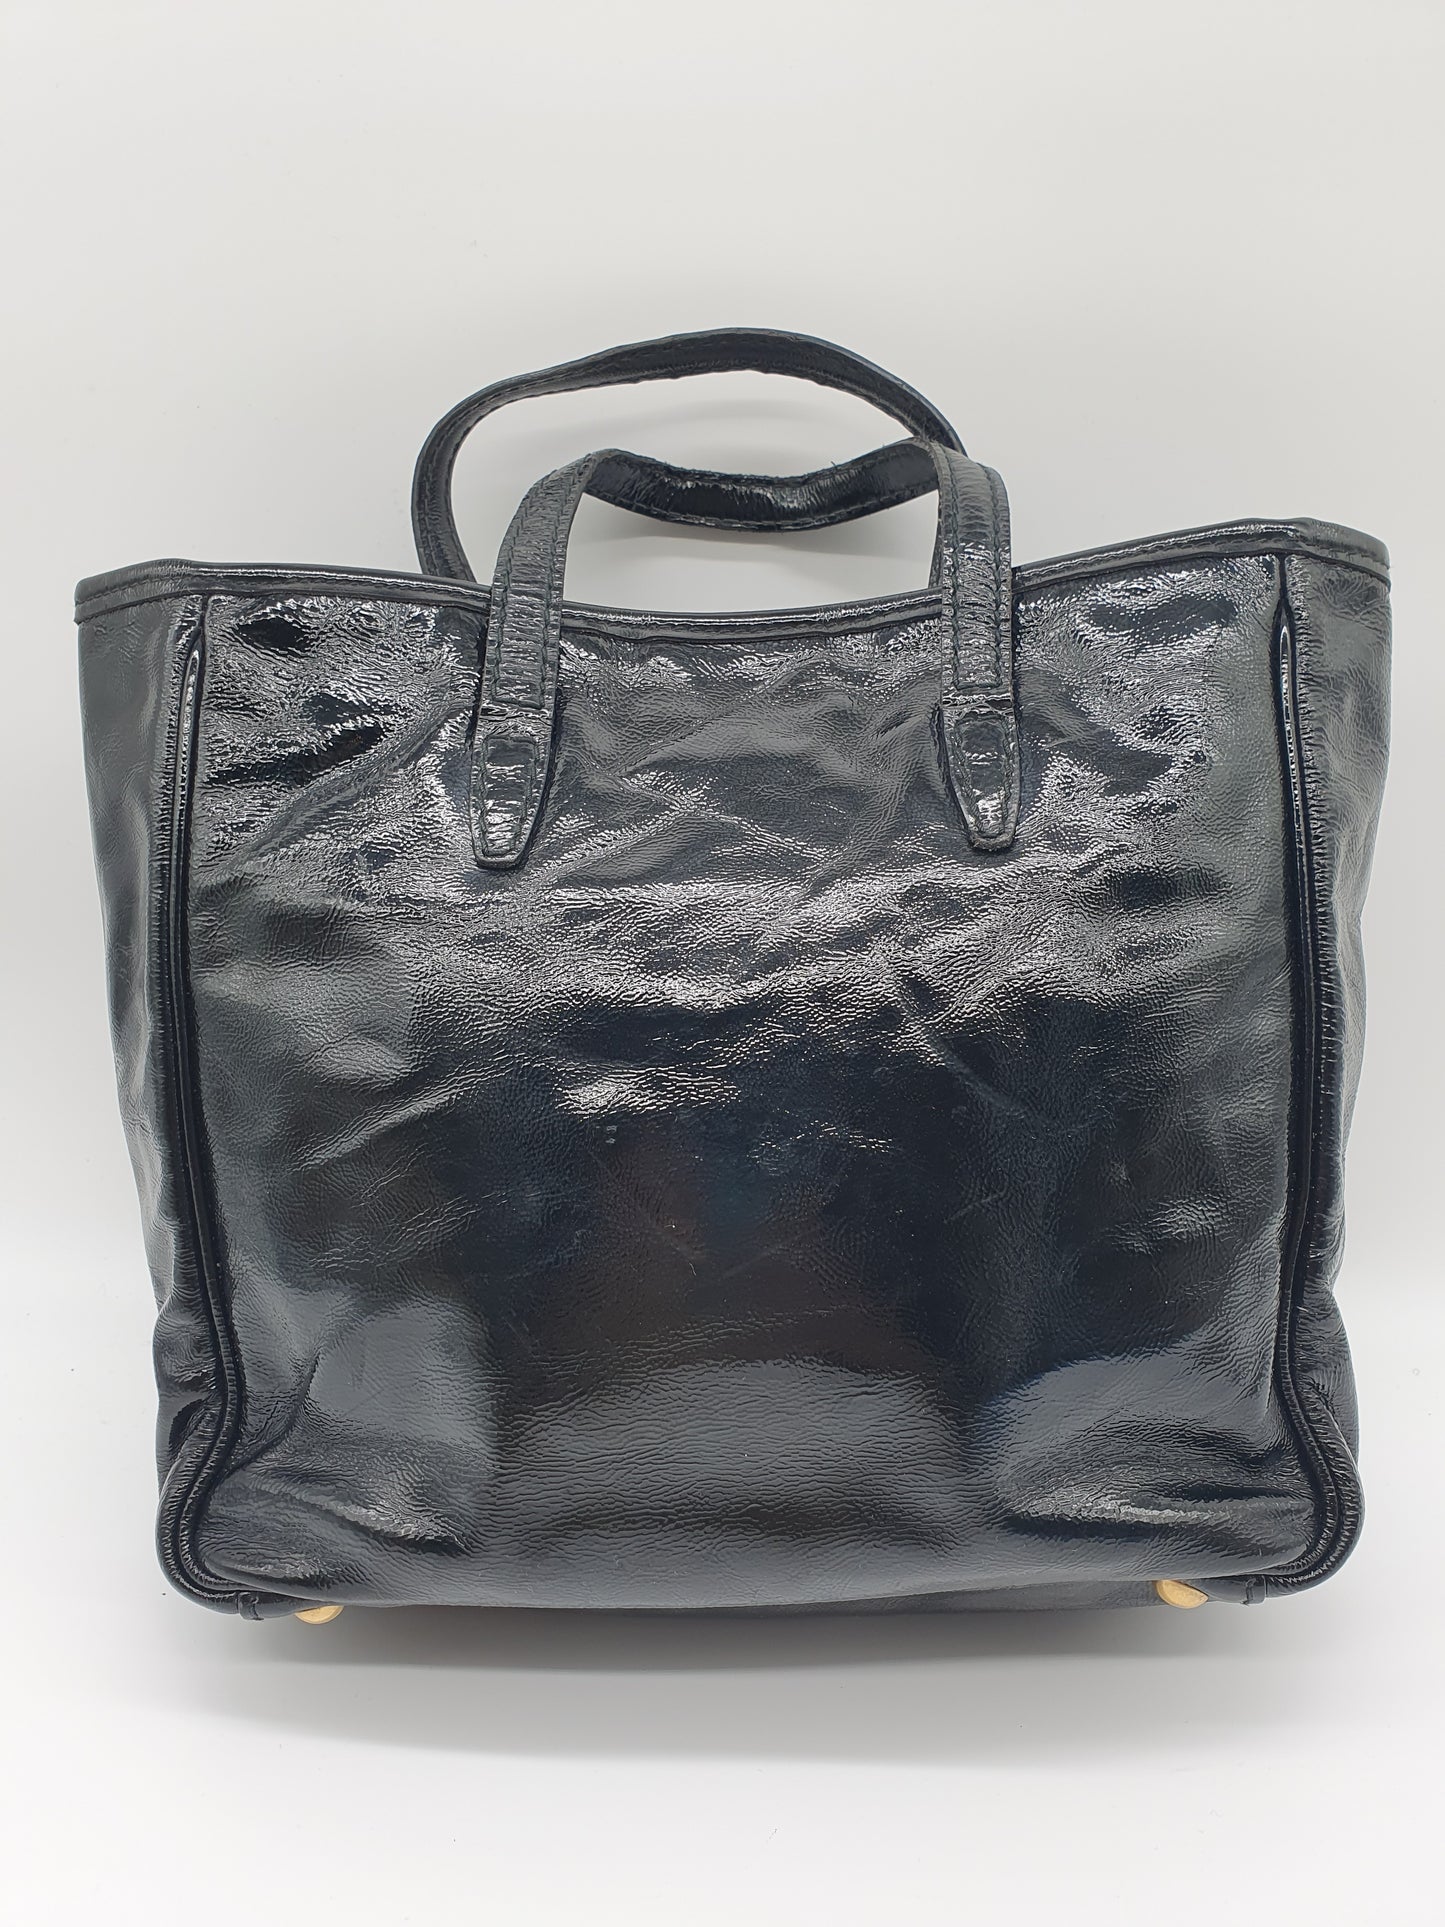 Yves saint Laurent handbag